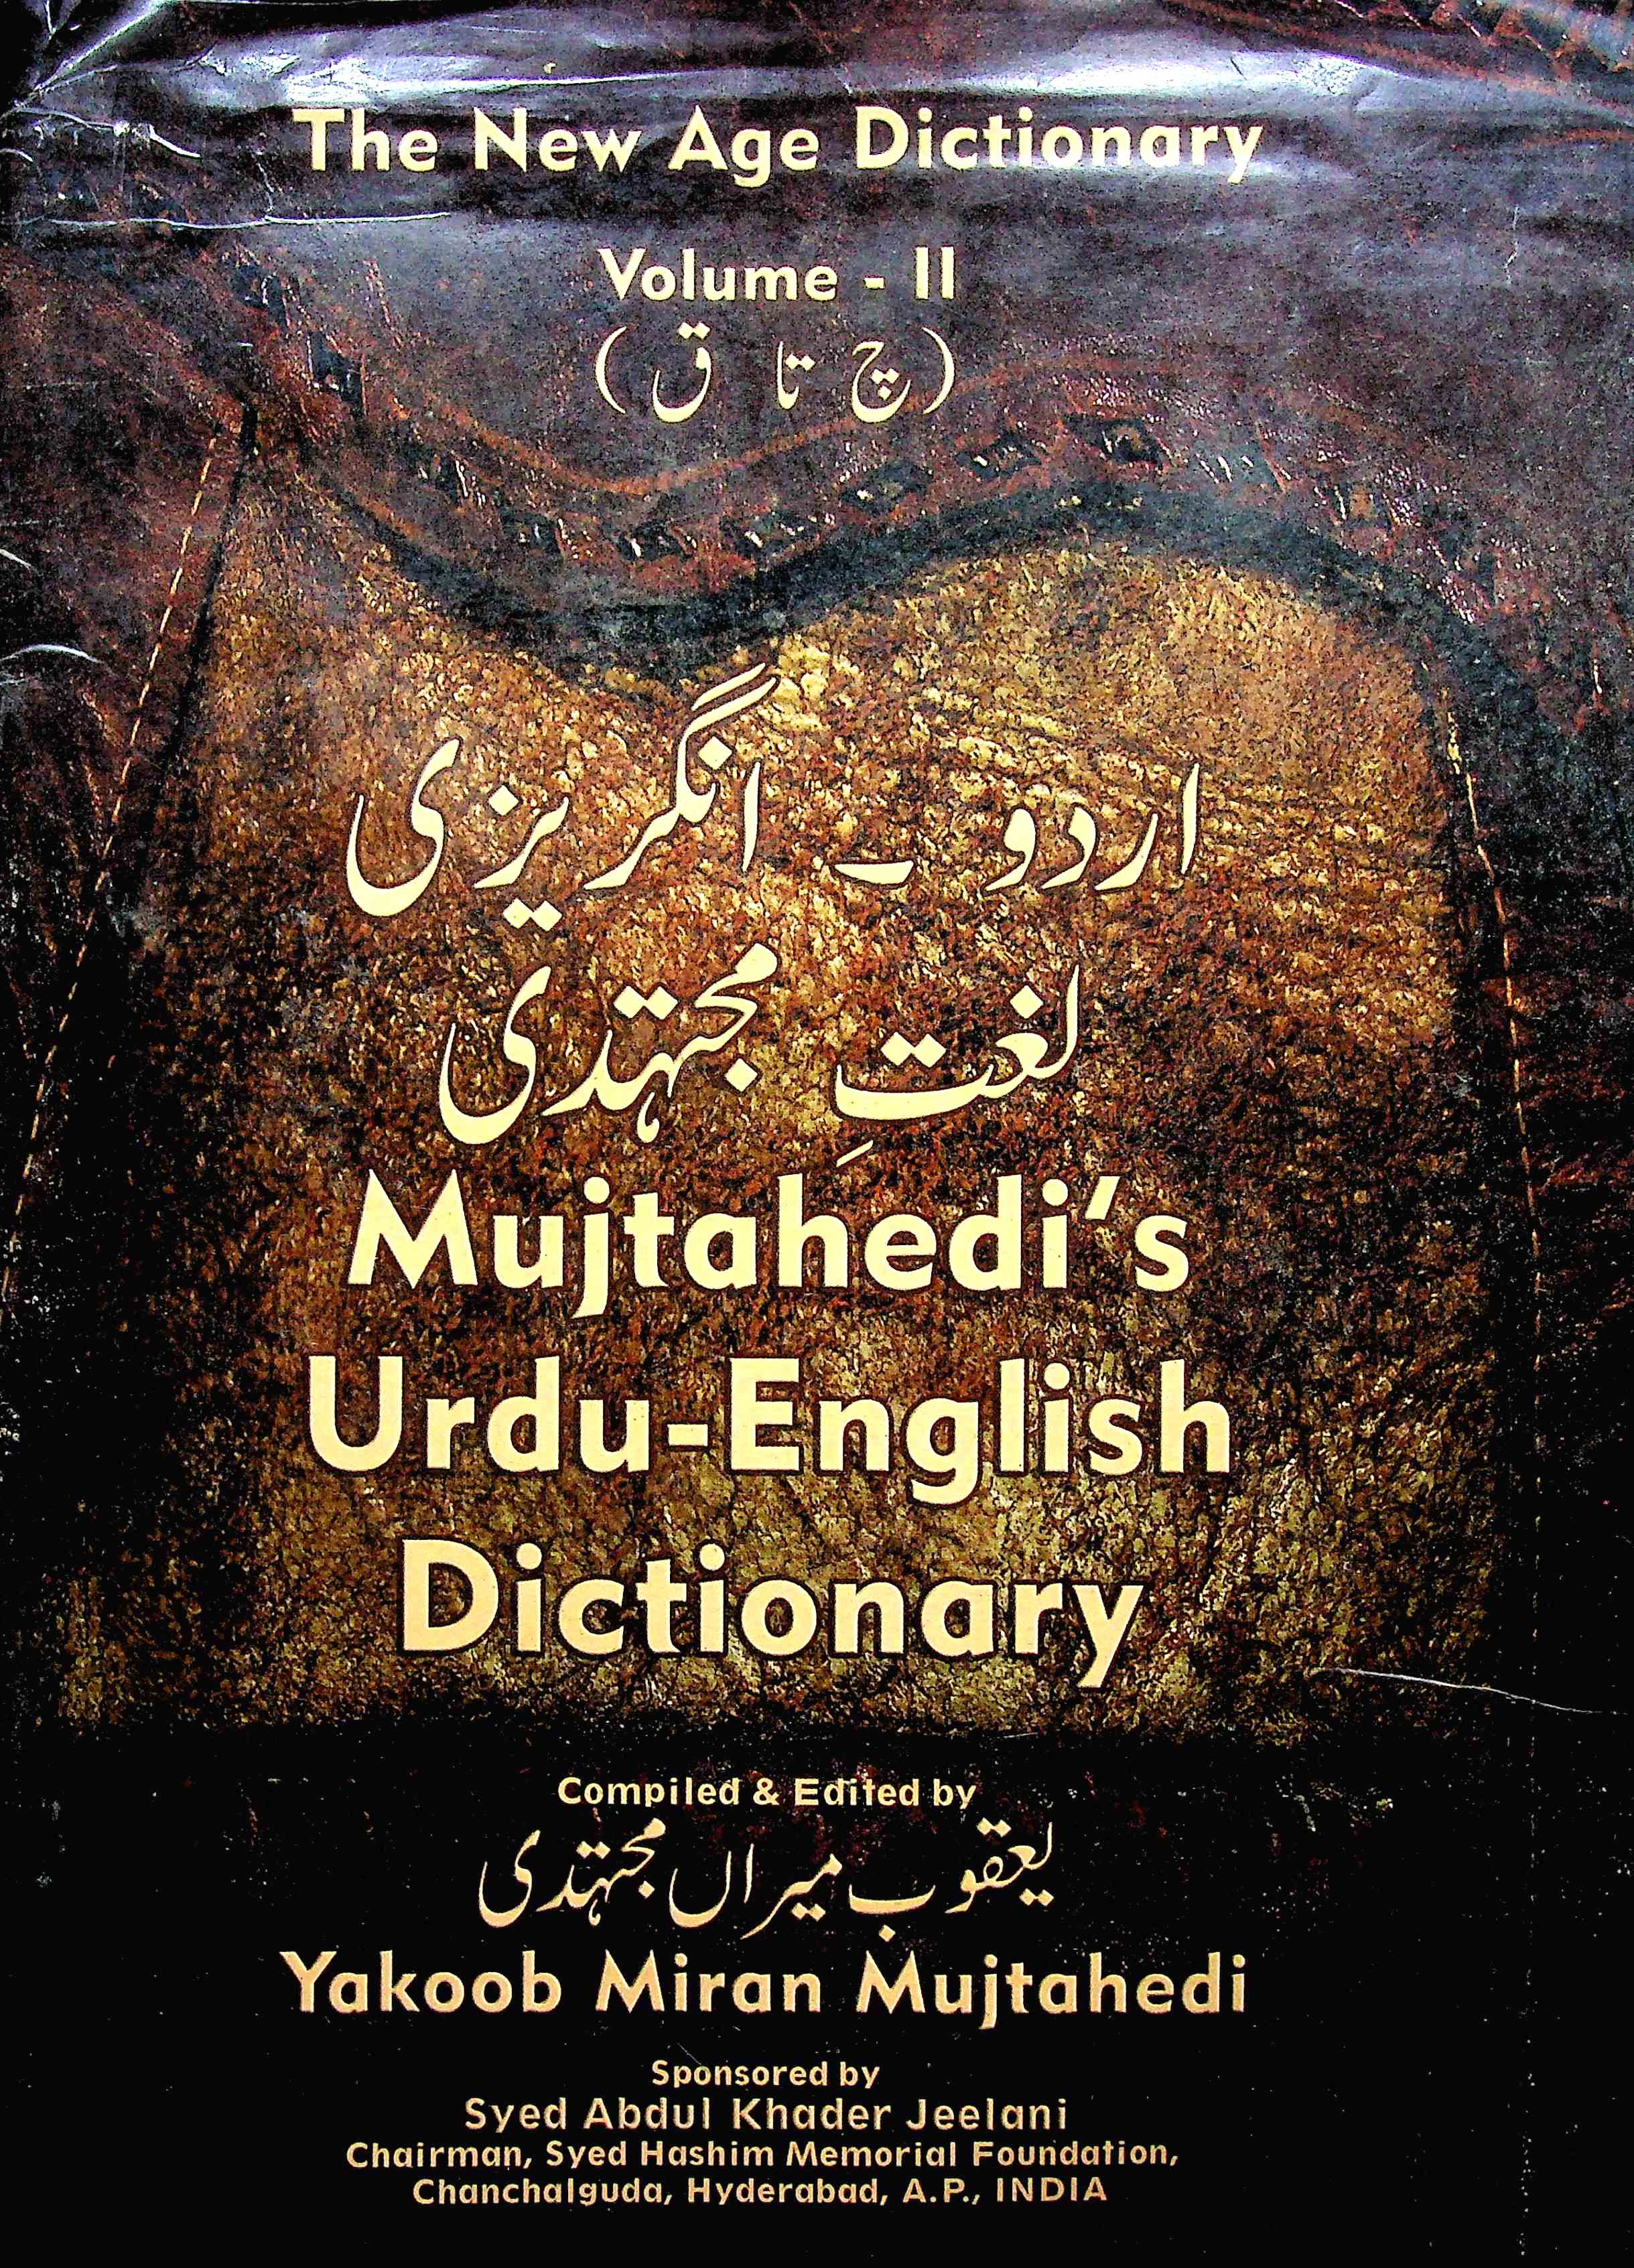 Mujtahedi's Urdu-English Dictionary